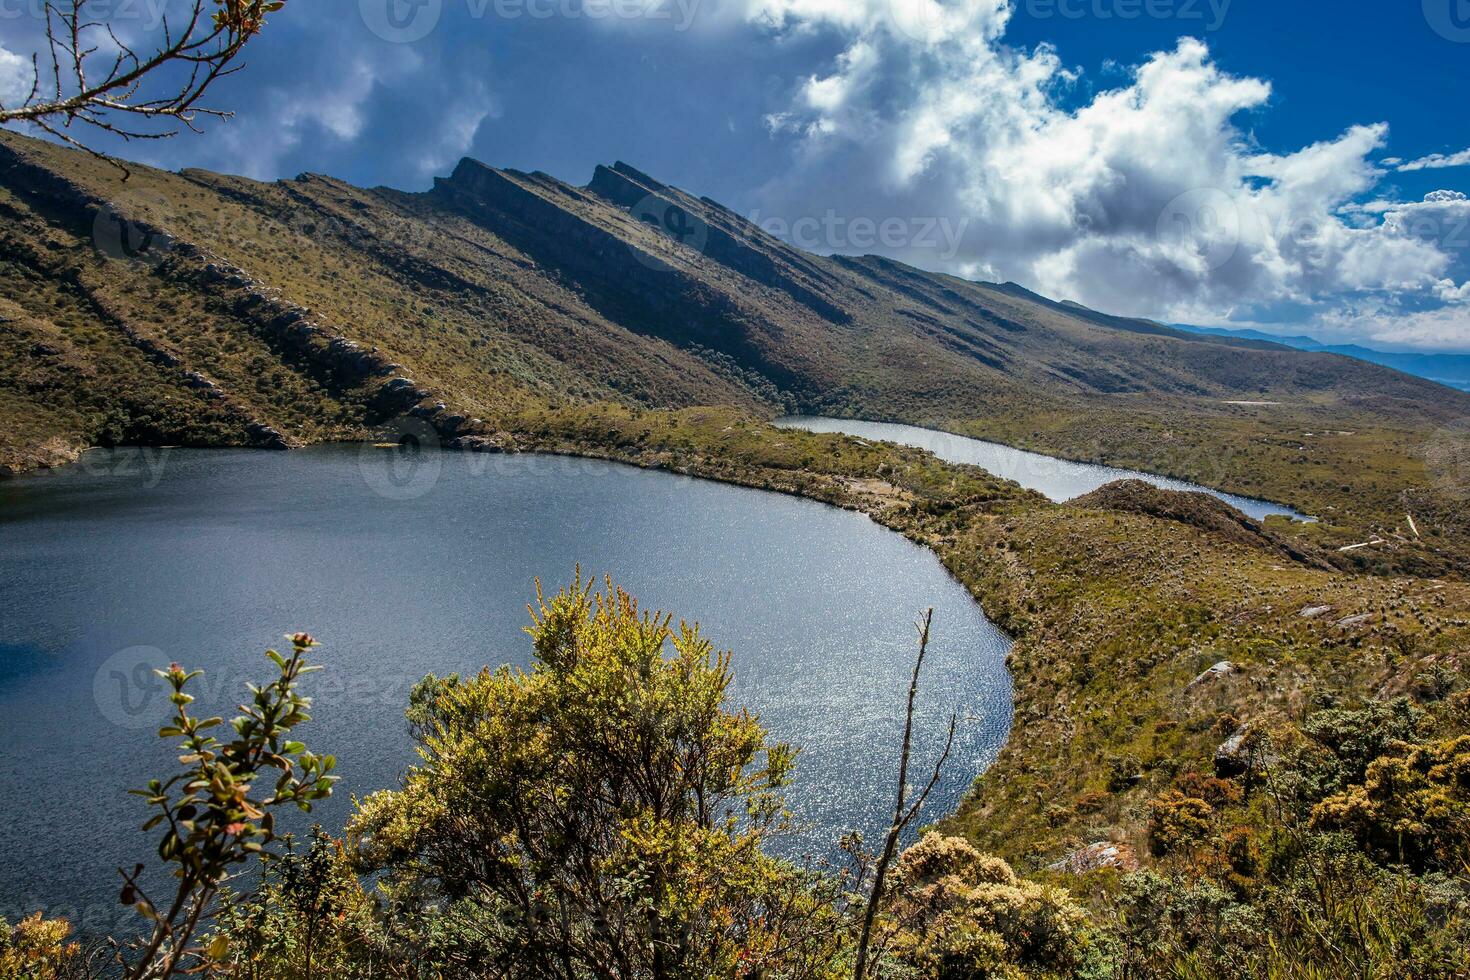 lindo panorama do colombiano andino montanhas mostrando paramo tipo vegetação dentro a departamento do cundinamarca foto